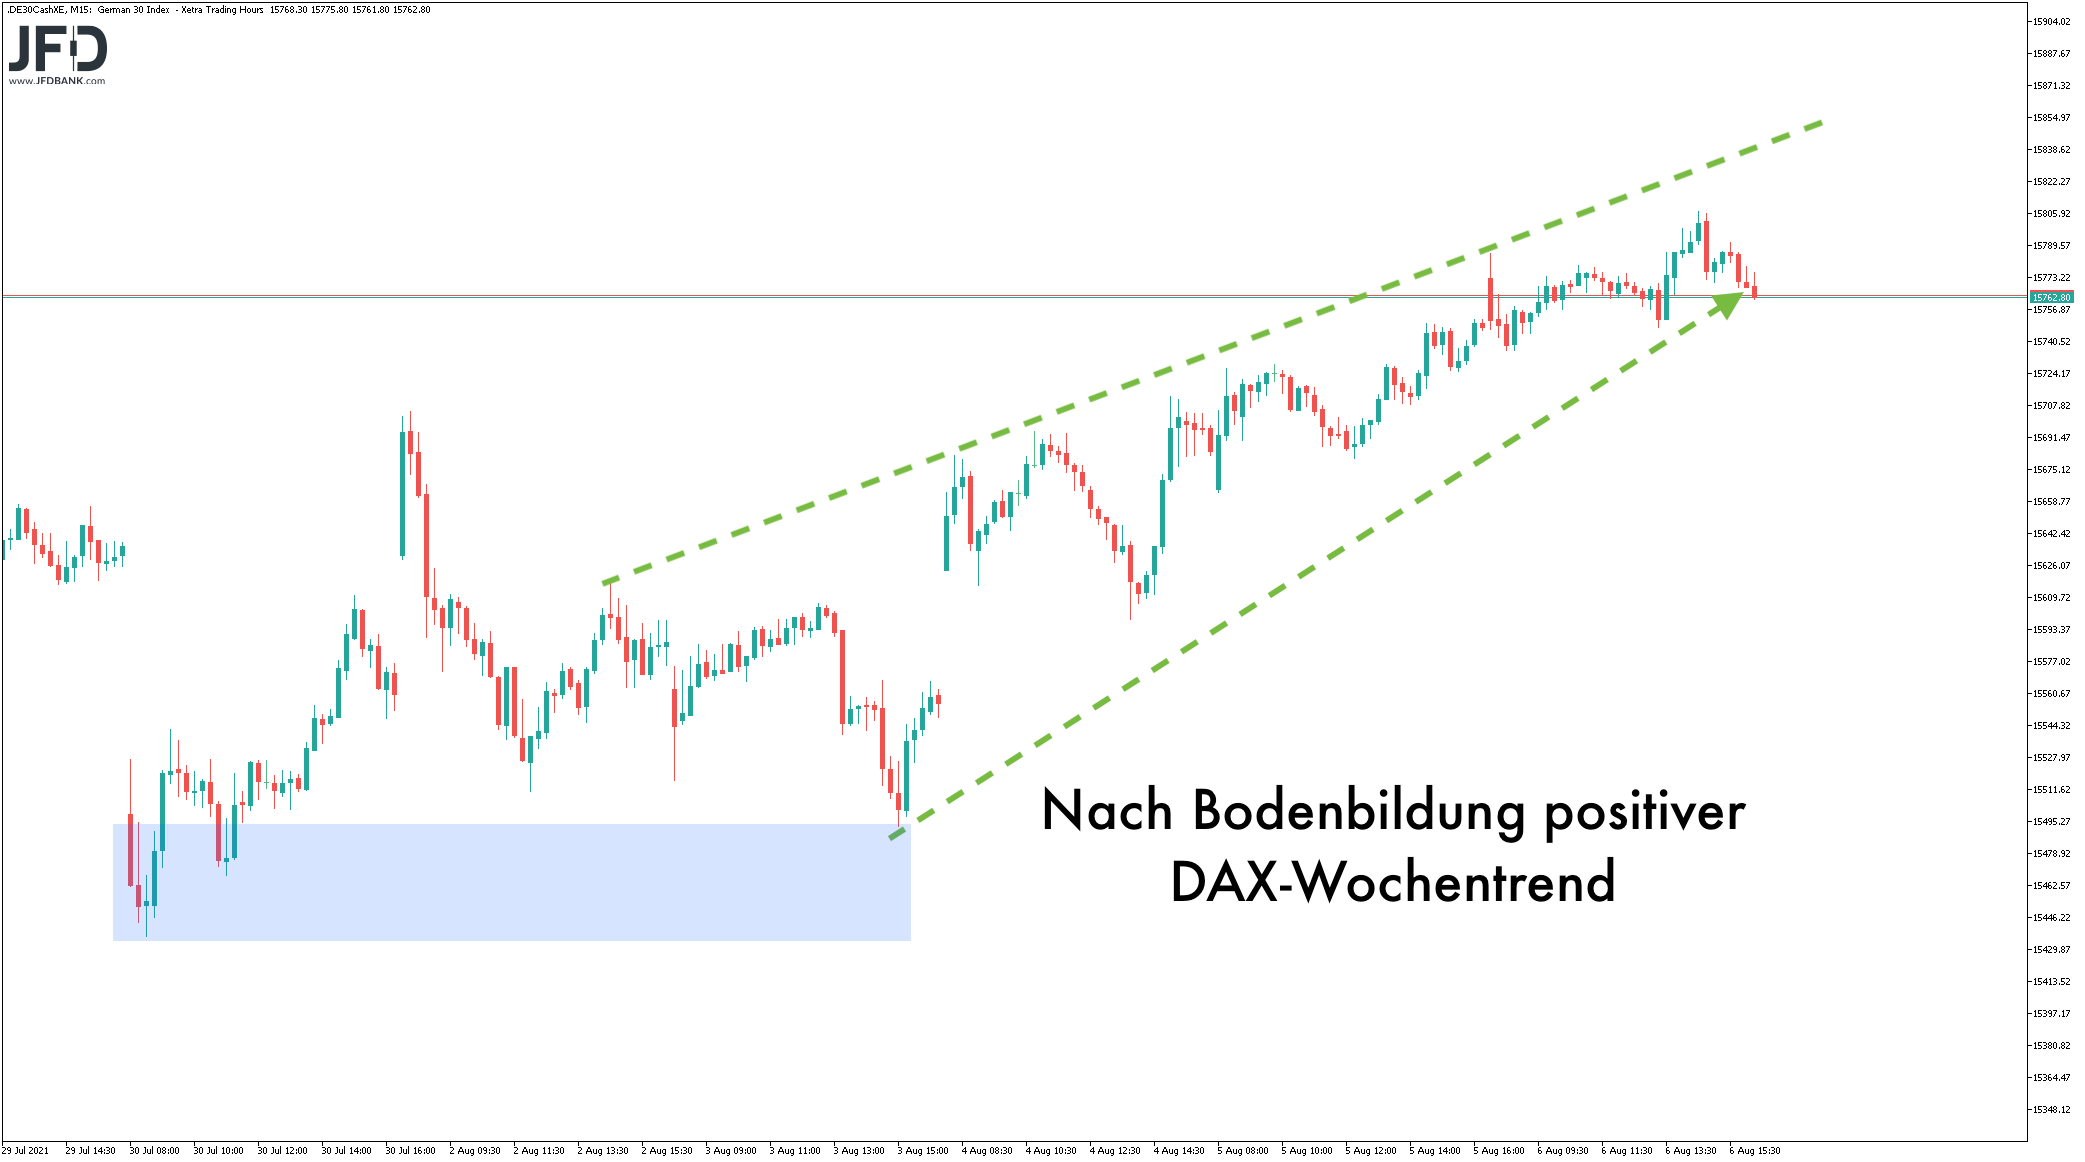 DAX-Rekordhoch-im-Fokus-Wochenstart-könnte-Signal-geben-Kommentar-JFD-Bank-GodmodeTrader.de-1